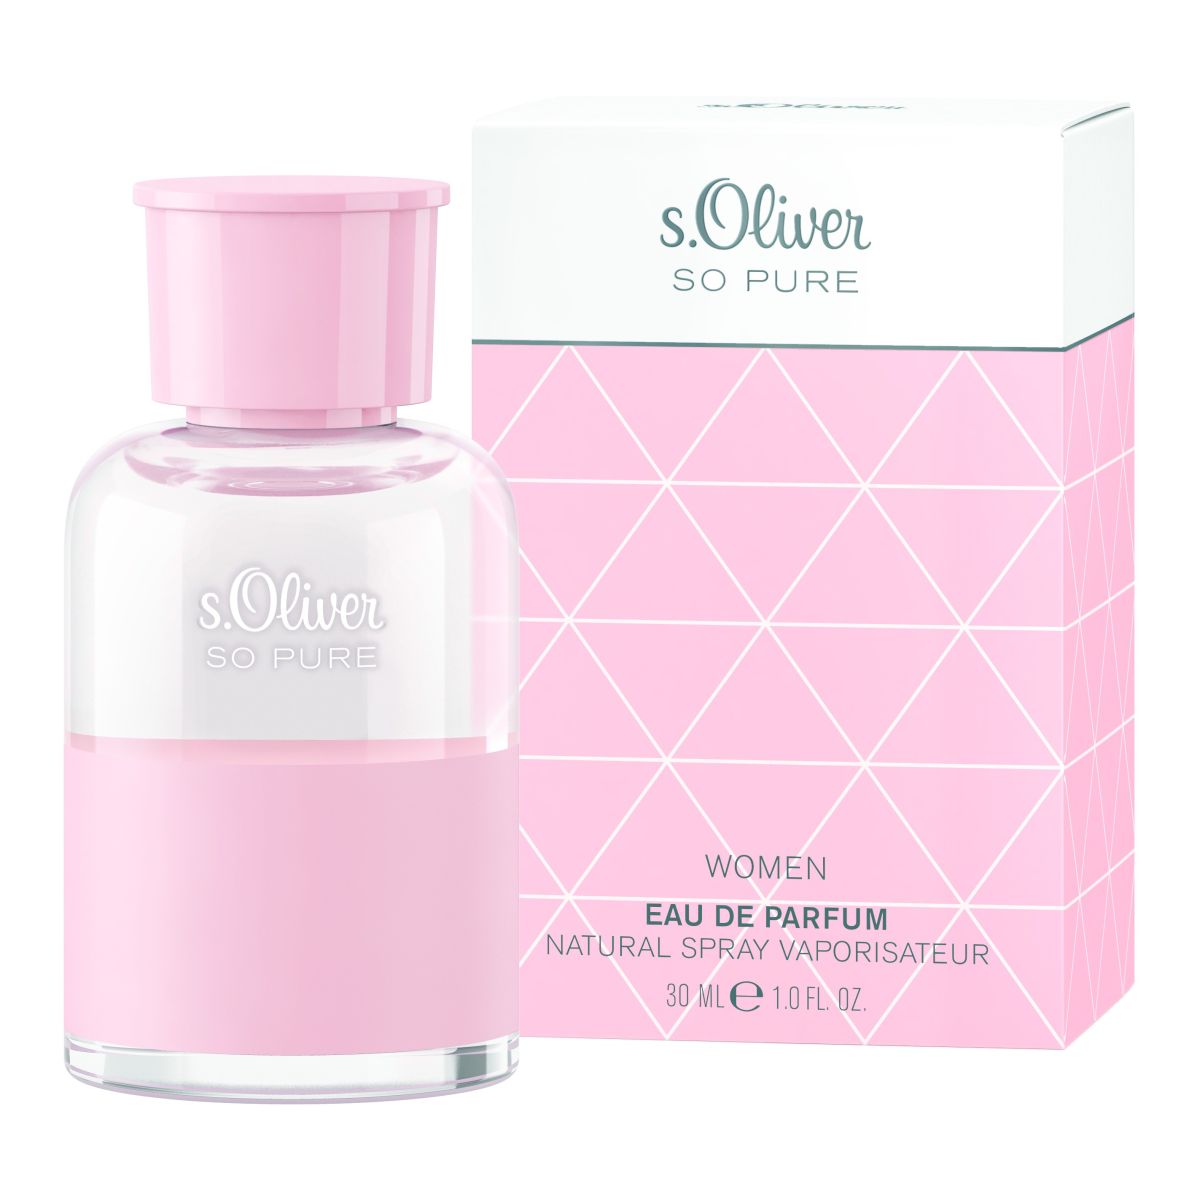 S.Oliver So Pure Women Eau de Parfum 30ml